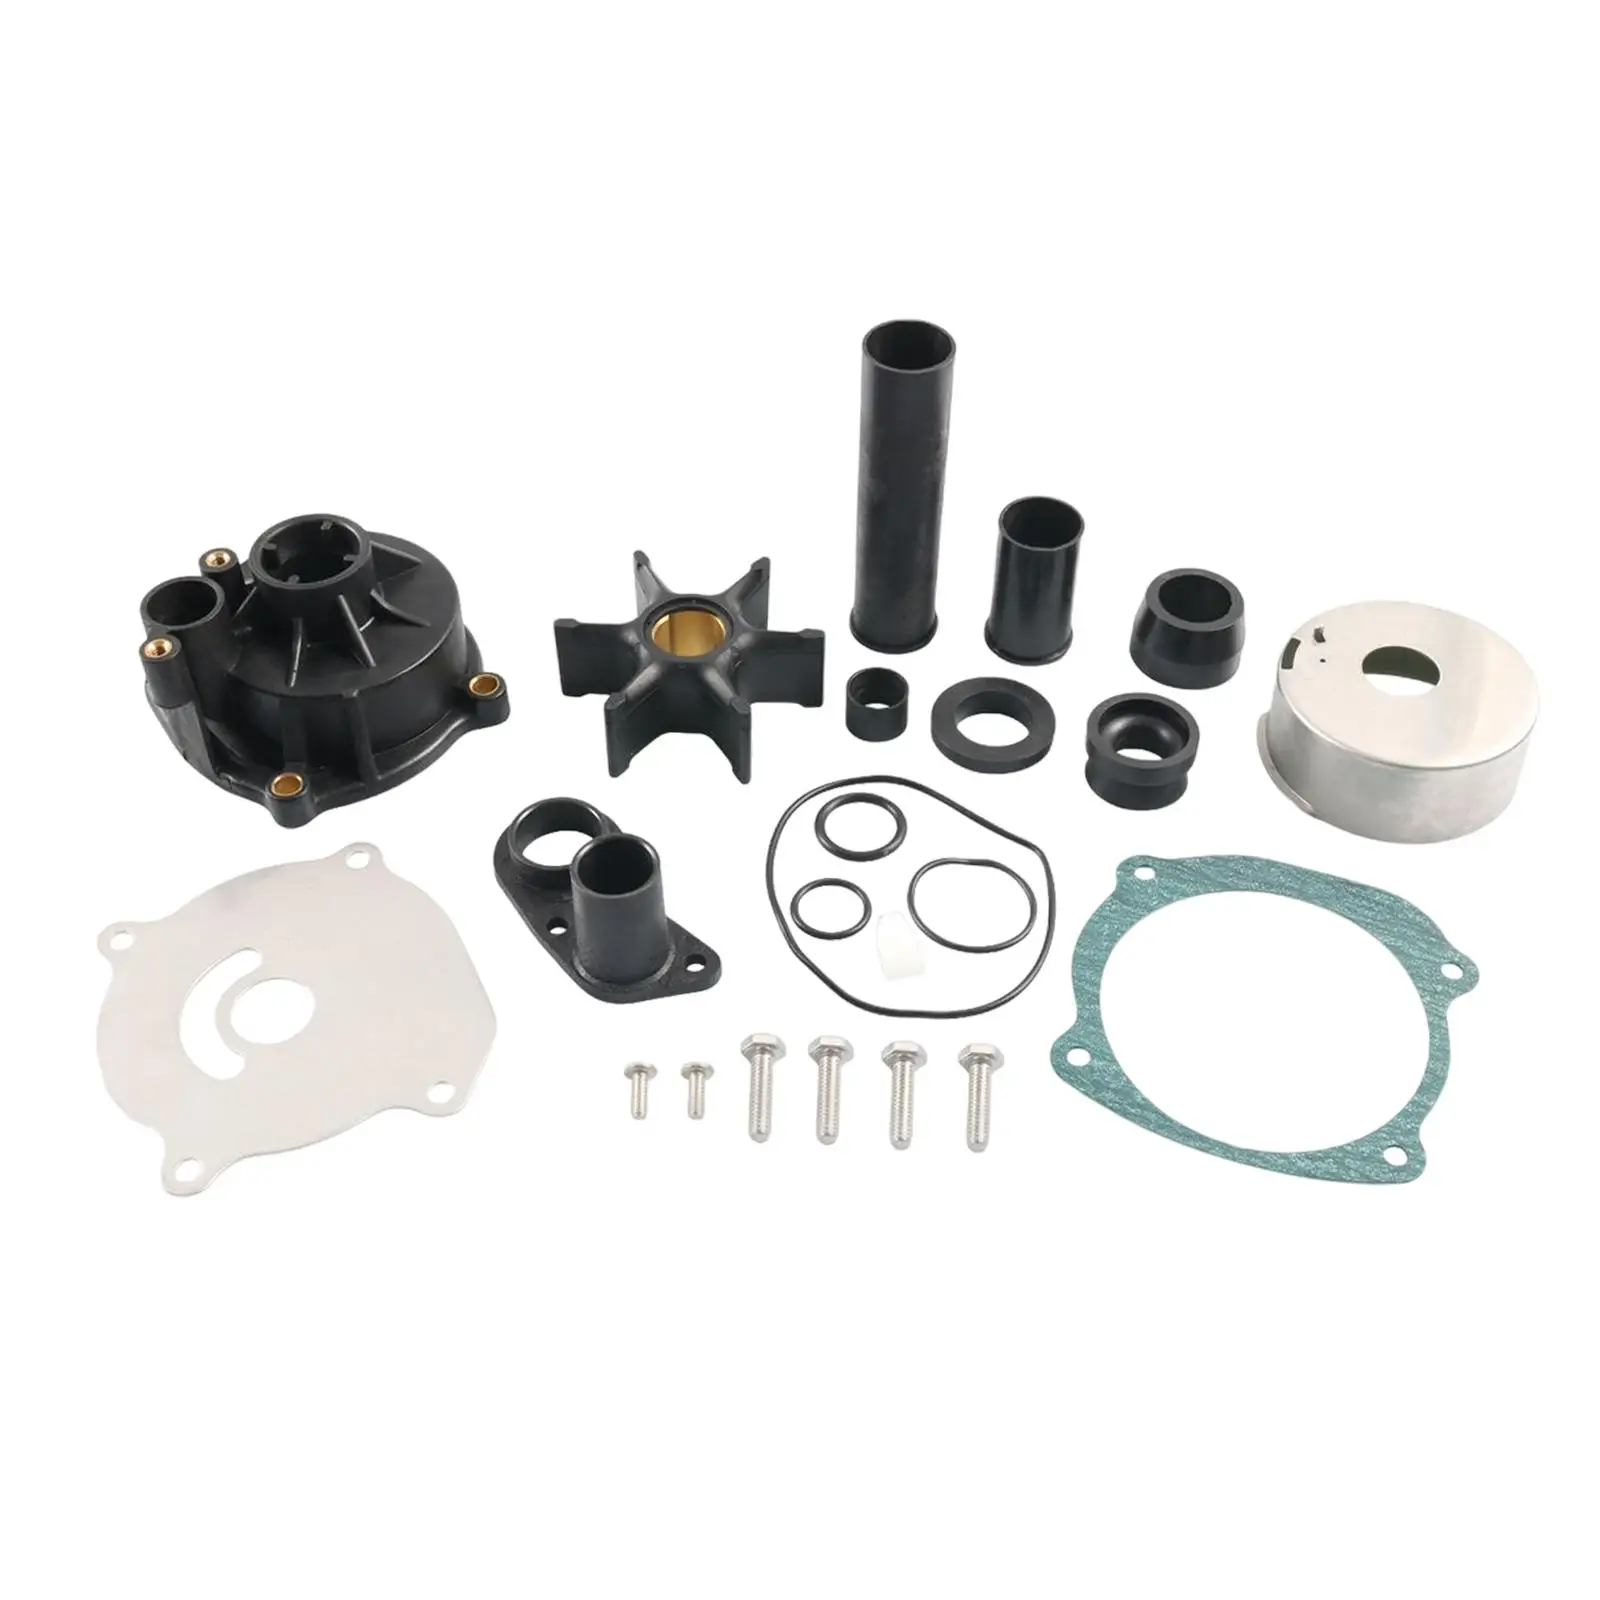 Water Pump Repair Kit for Johnson Evinrude V4 V6 V8 Easy to Install